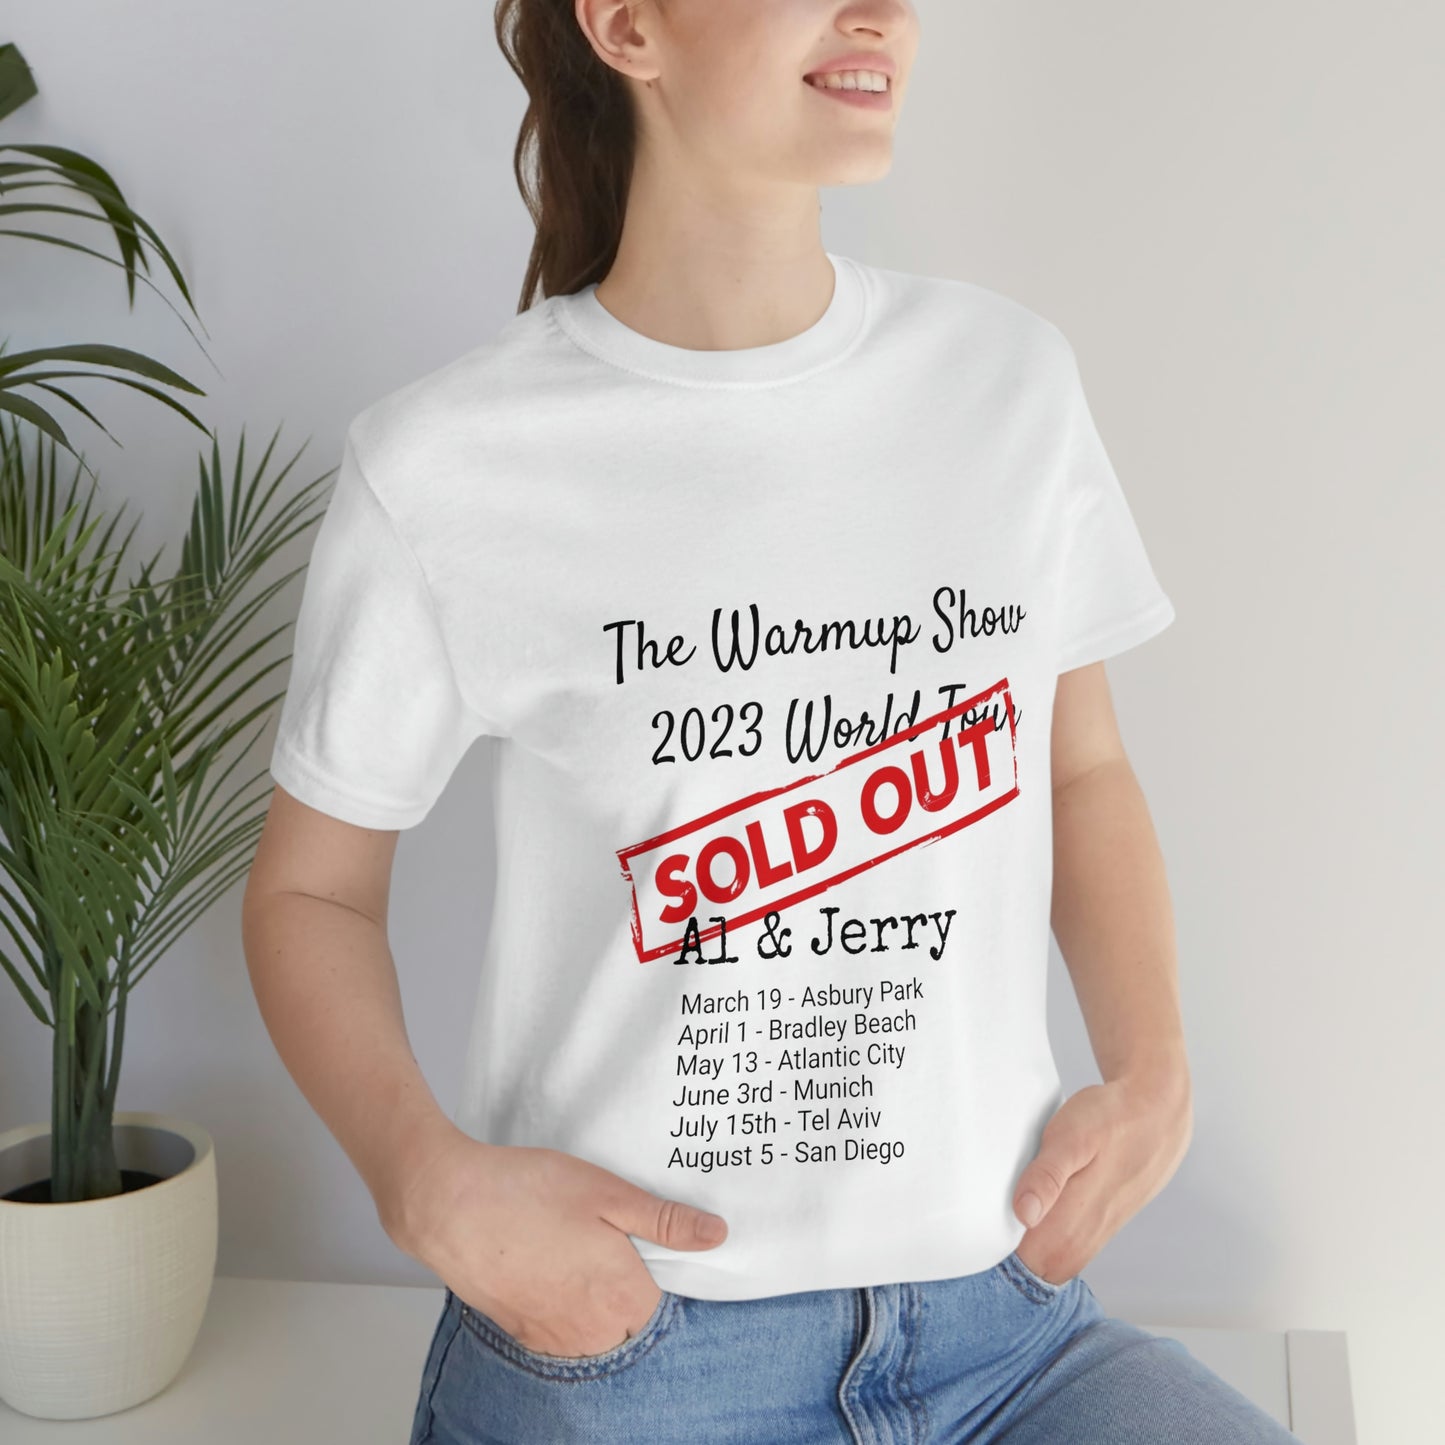 Al & Jerry 2023 World Tour T-Shirt